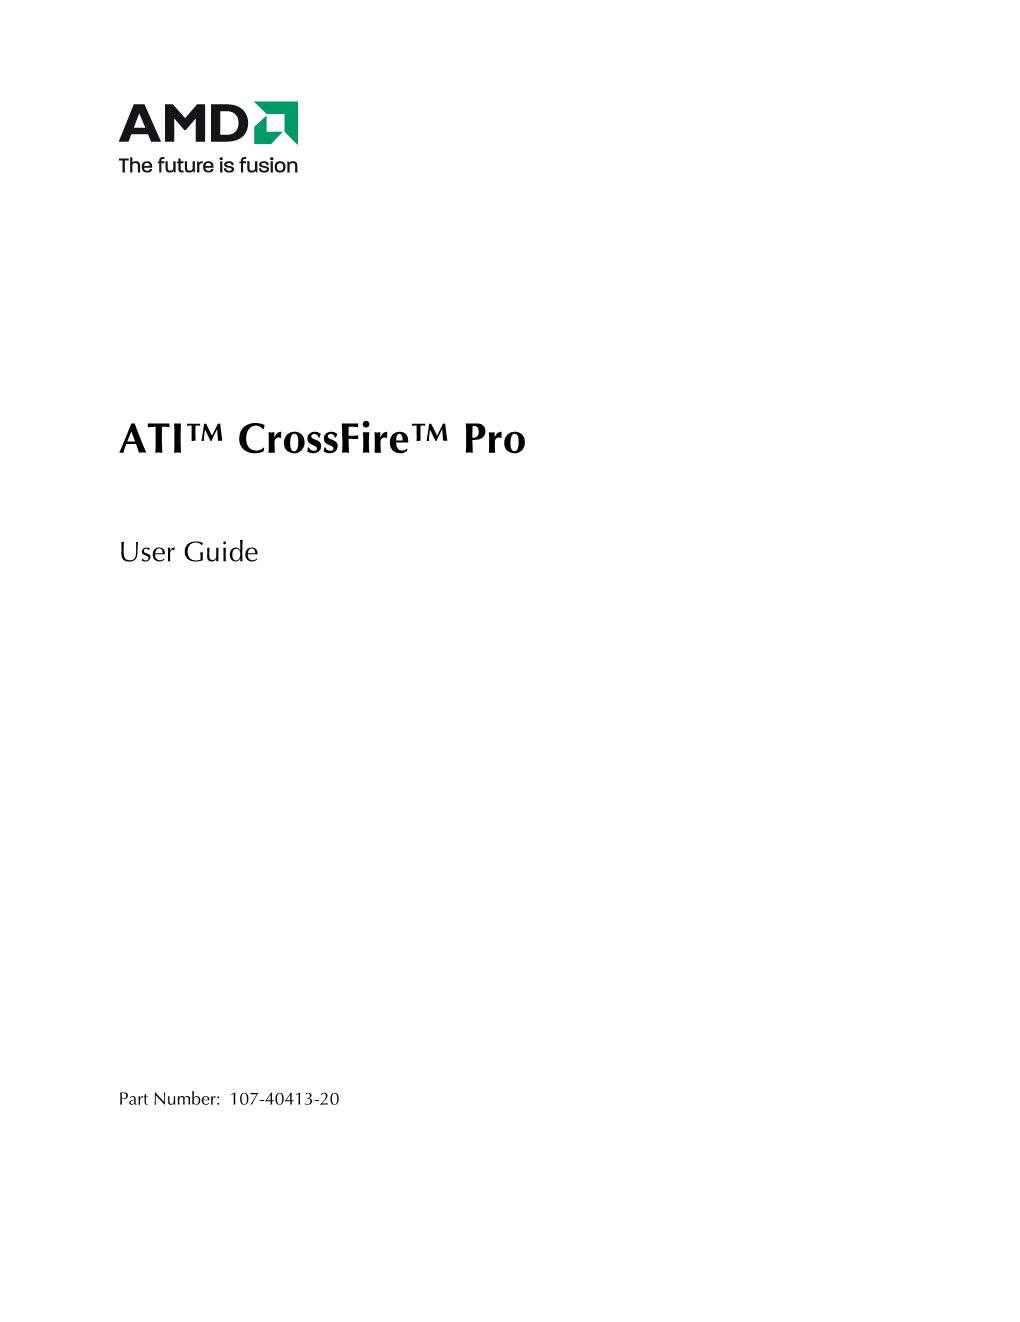 ATI™ Crossfire™ Pro